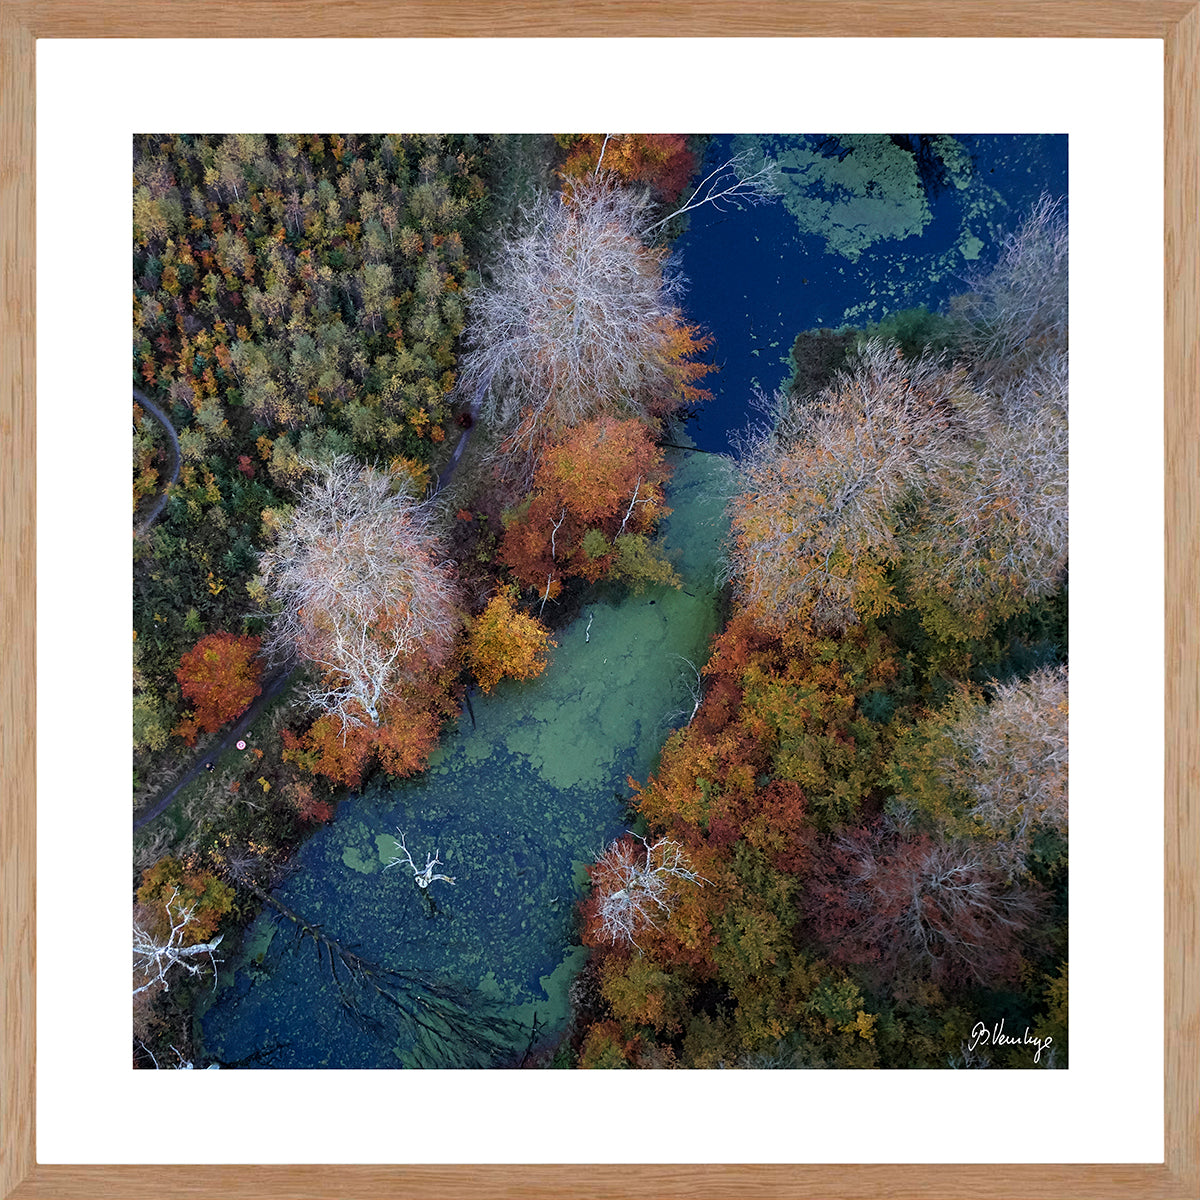 Marselisborgskoven på en efterårsdag med flotte brændte farver. En andemadsbelagt sø skærer sig gennem skoven. Blå grøn og brændte farver.